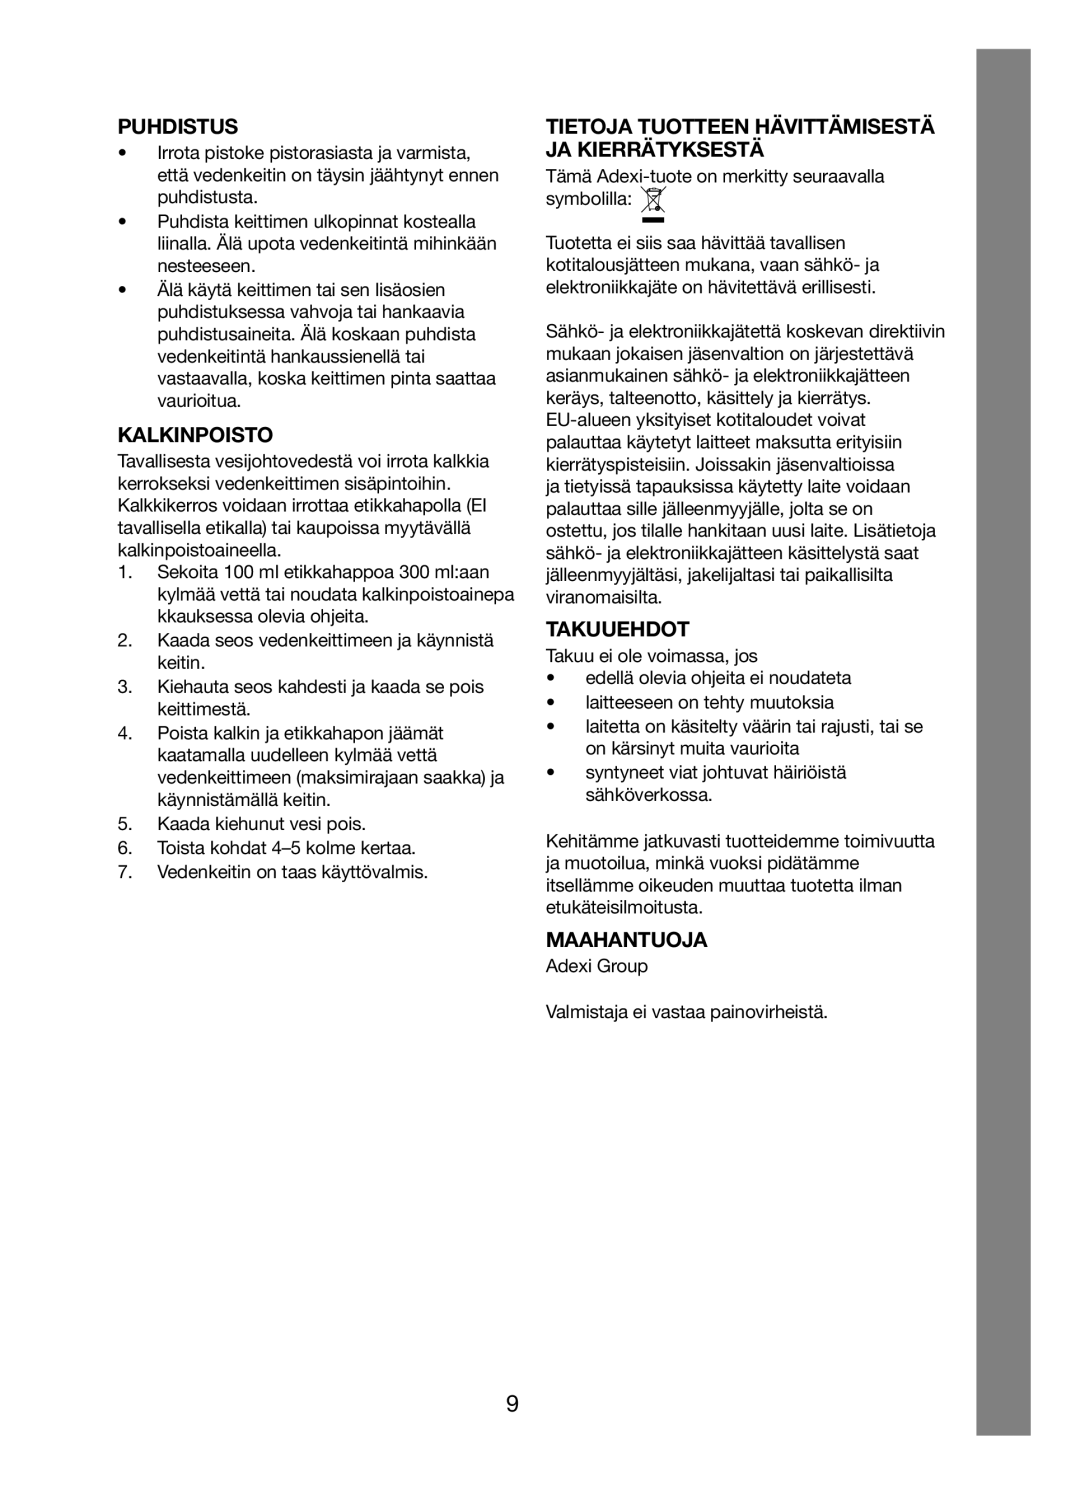 Melissa 245-035 manual Puhdistus, Kalkinpoisto, Tietoja Tuotteen Hävittämisestä Ja Kierrätyksestä, Takuuehdot, Maahantuoja 